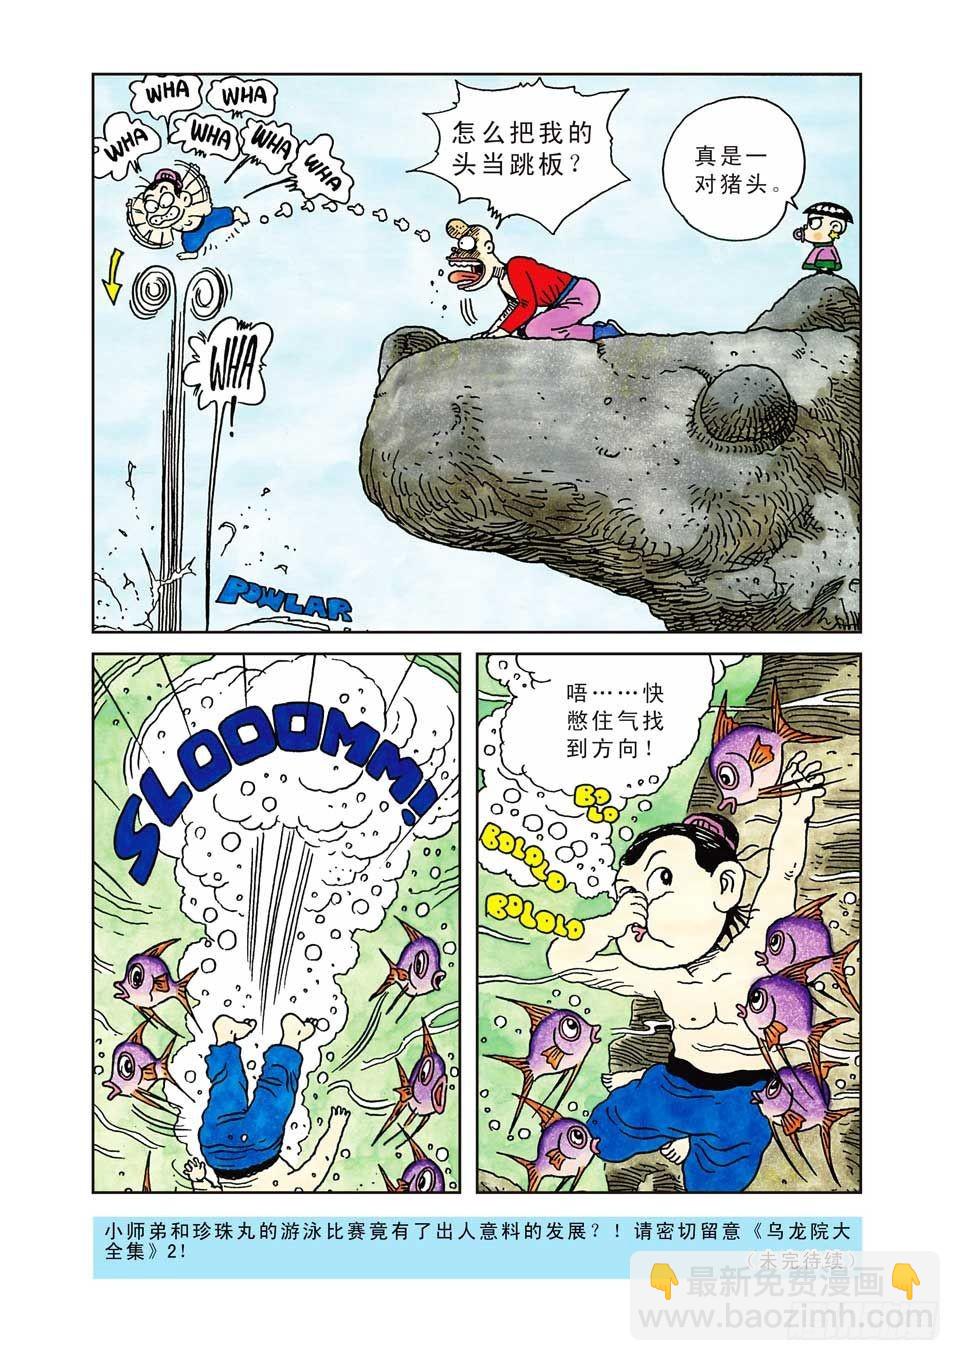 烏龍院爆笑漫畫系列七鮮魚丸 - 第1集 - 2